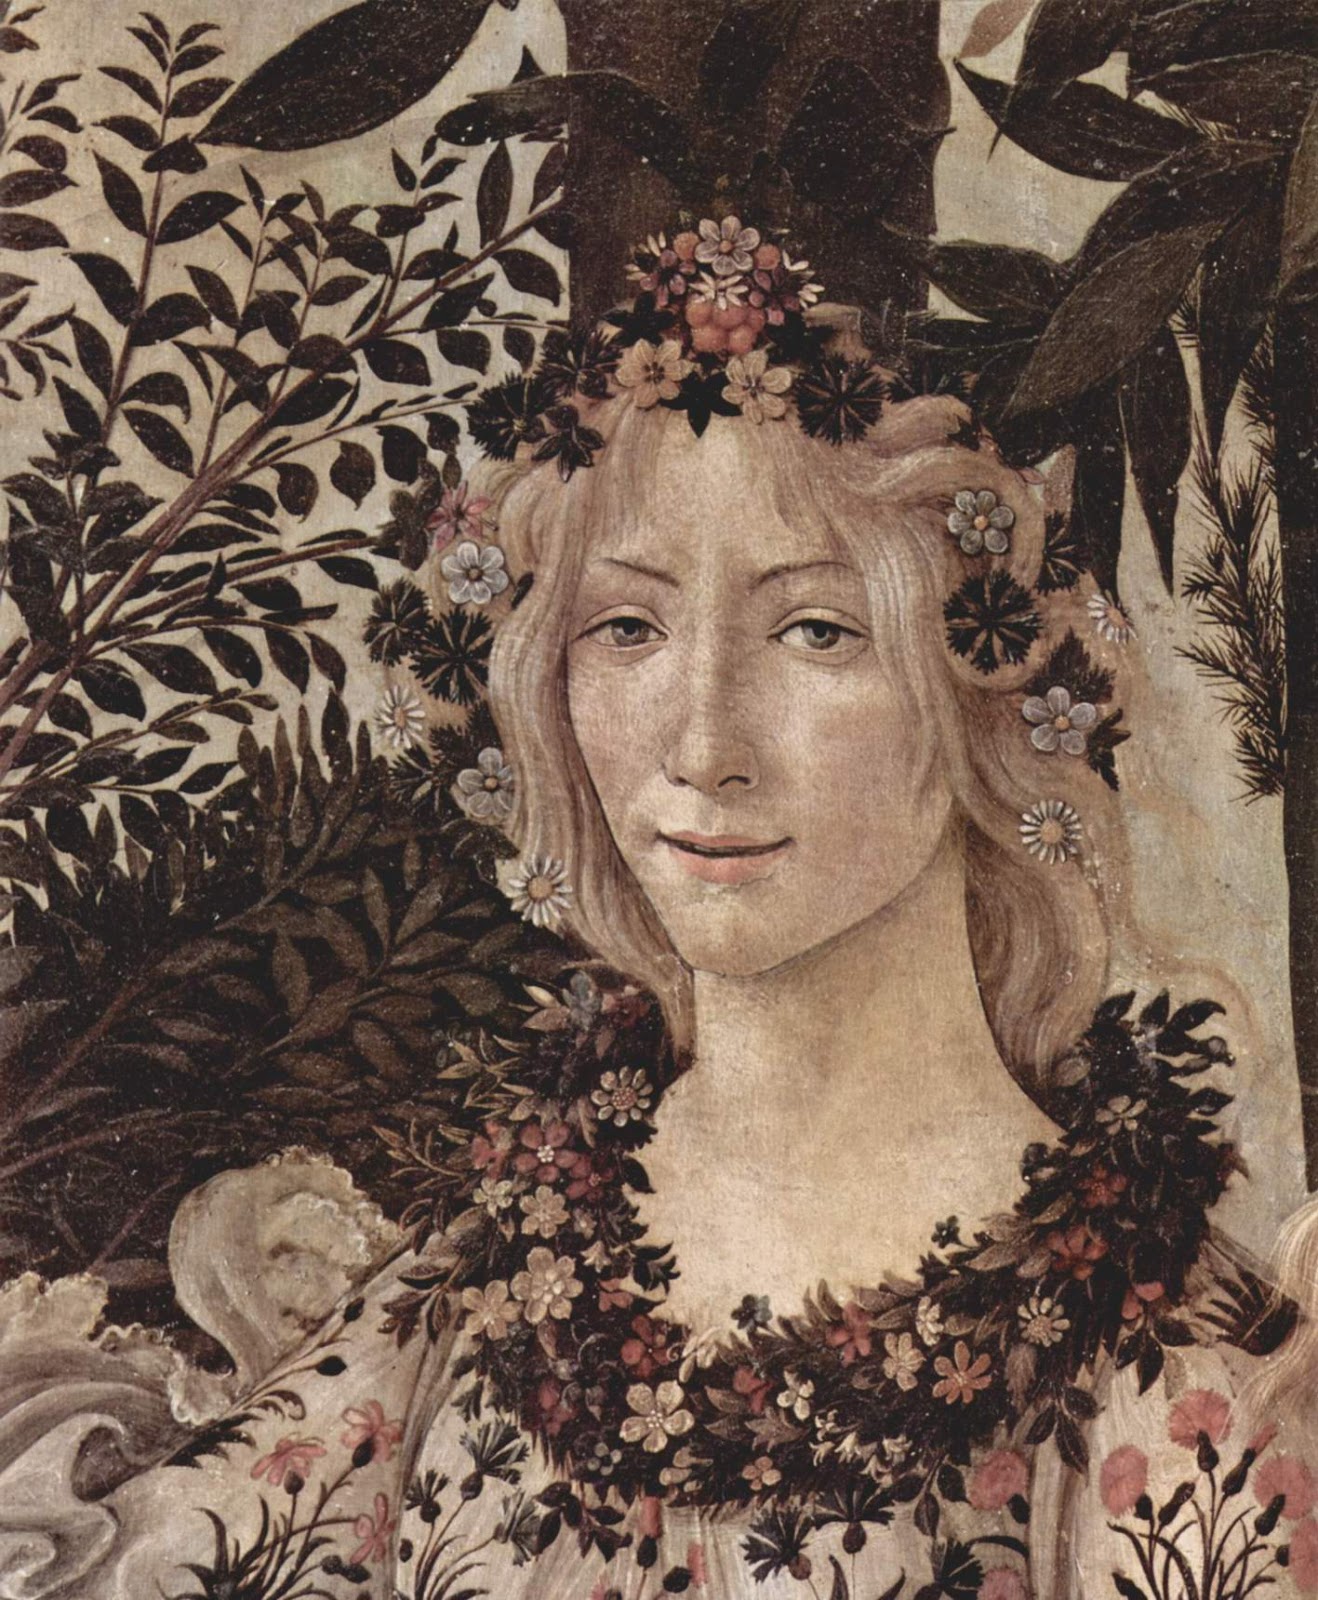 Sandro+Botticelli-1445-1510 (158).jpg